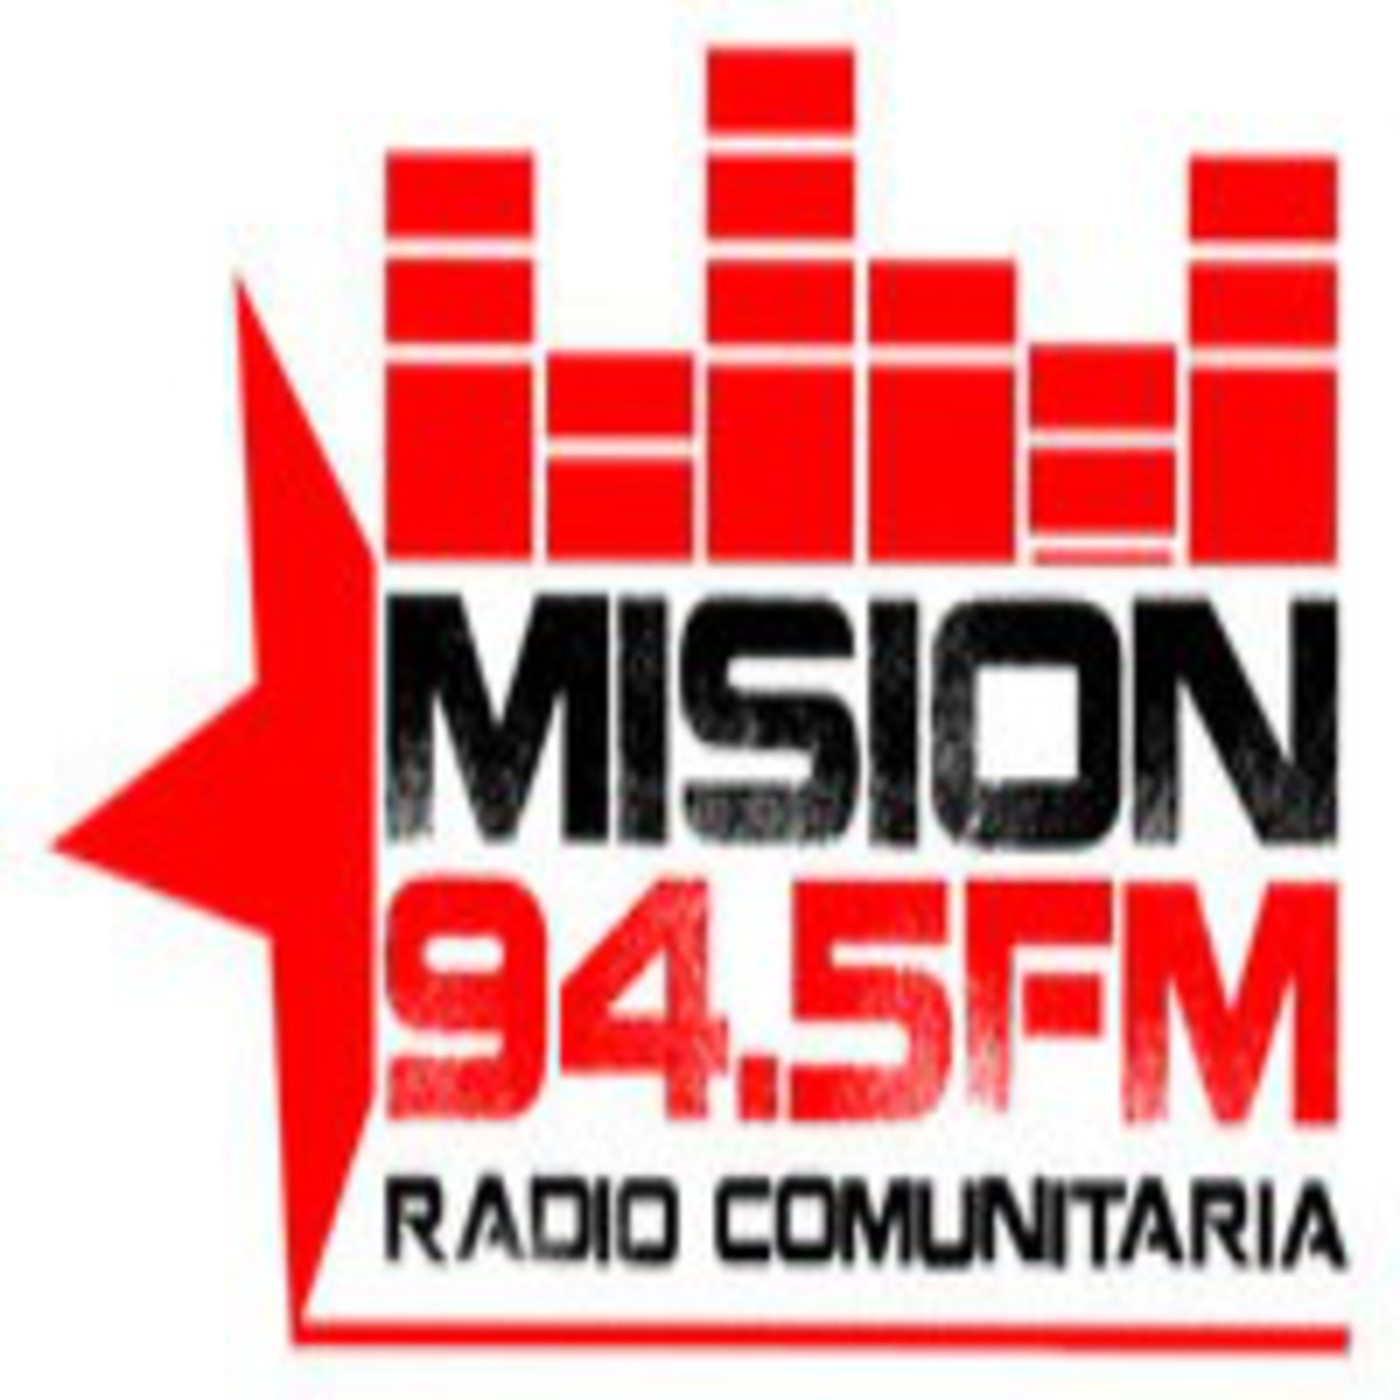 Podcast Radio Comunitaria Mision Stereo 94.5fm - Podcast en